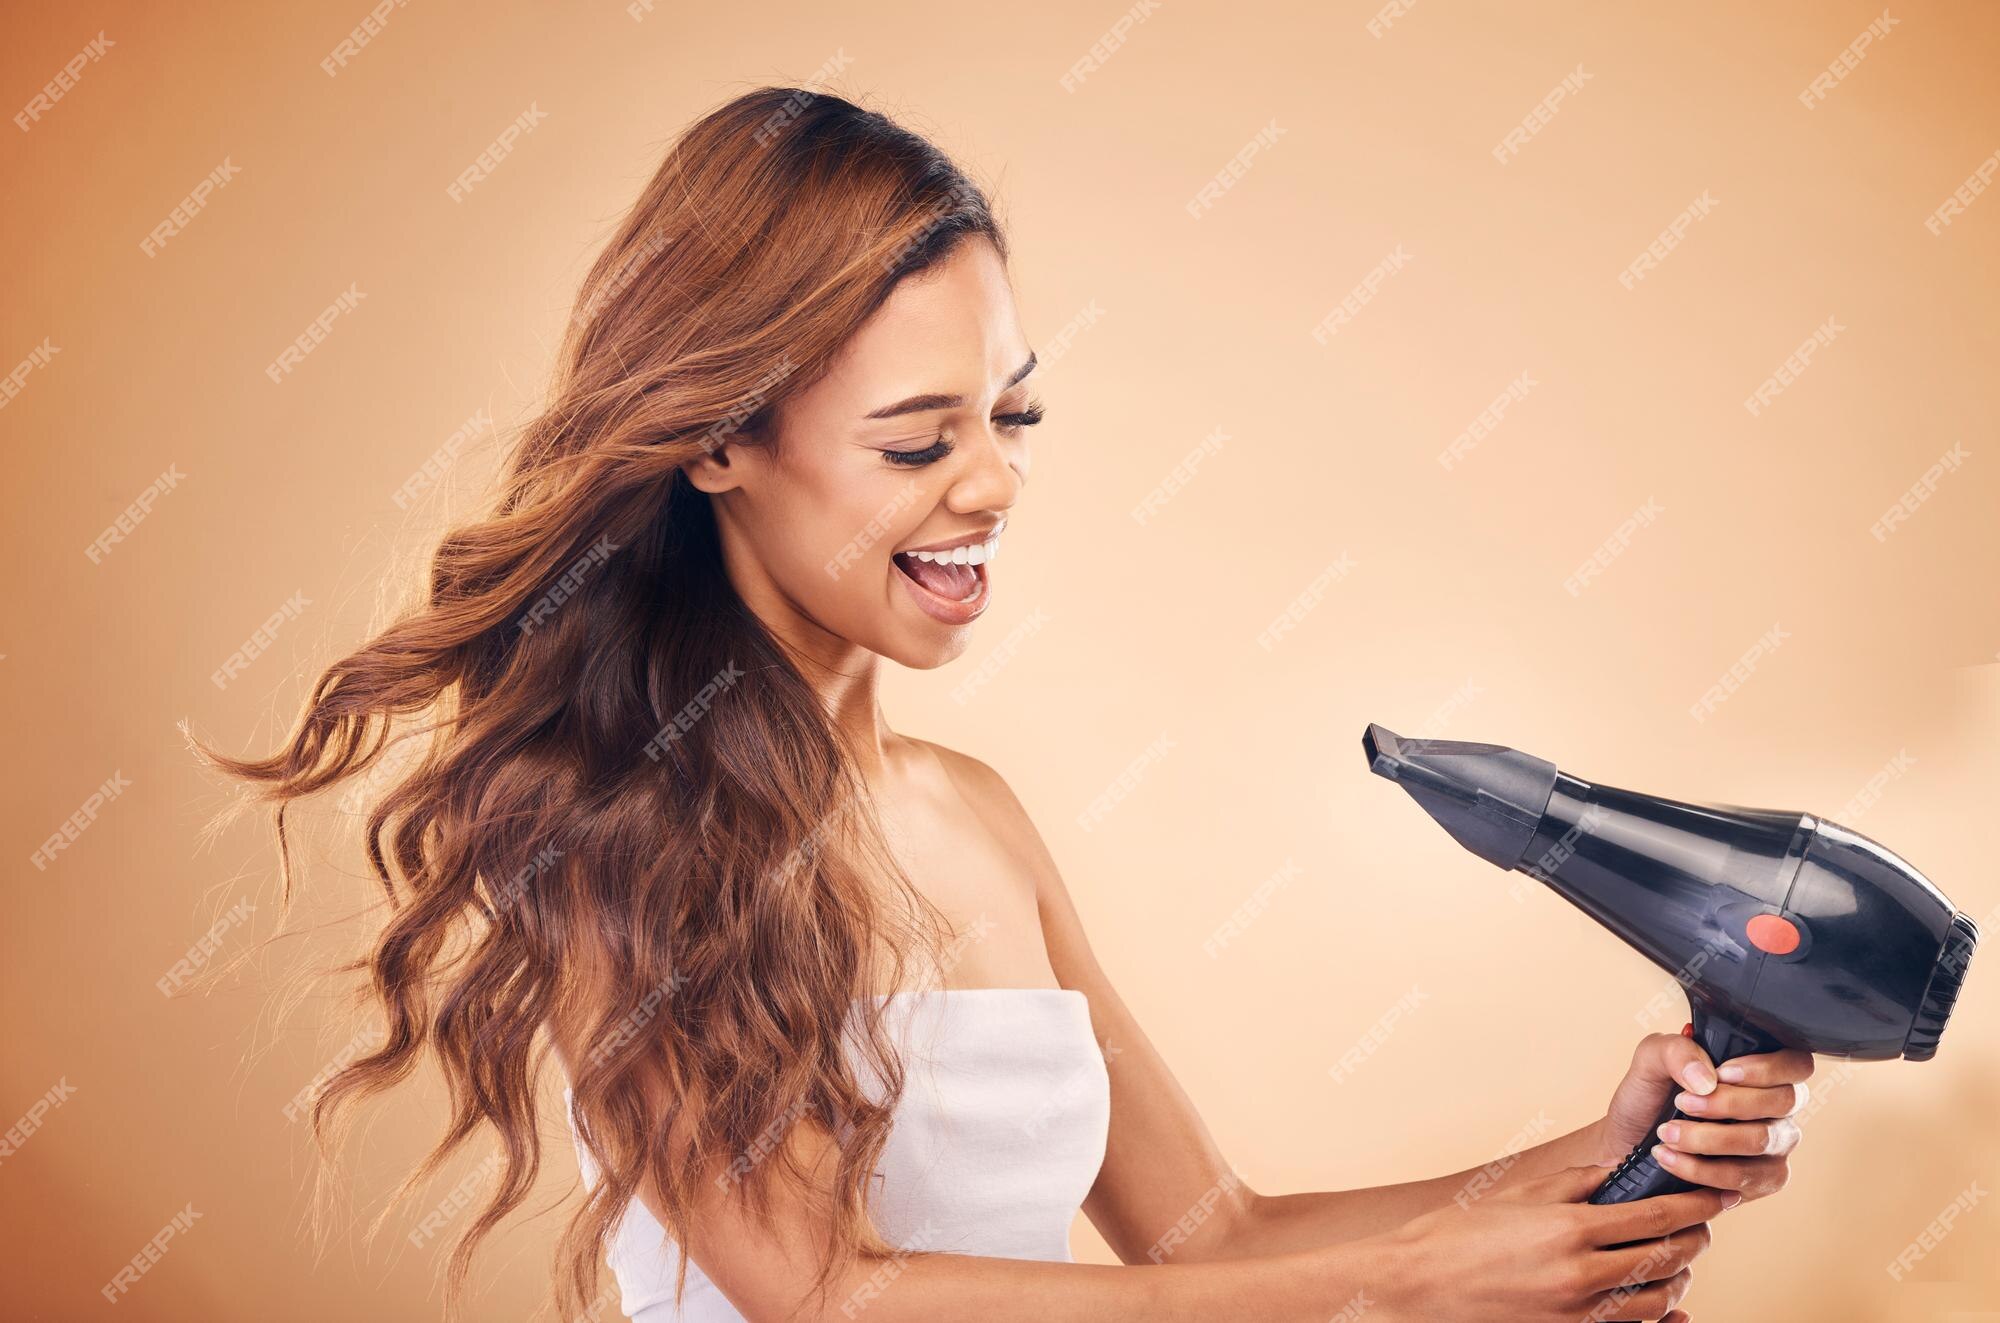 Cabeleireiro alegre, mulher posando com um secador de cabelo nas